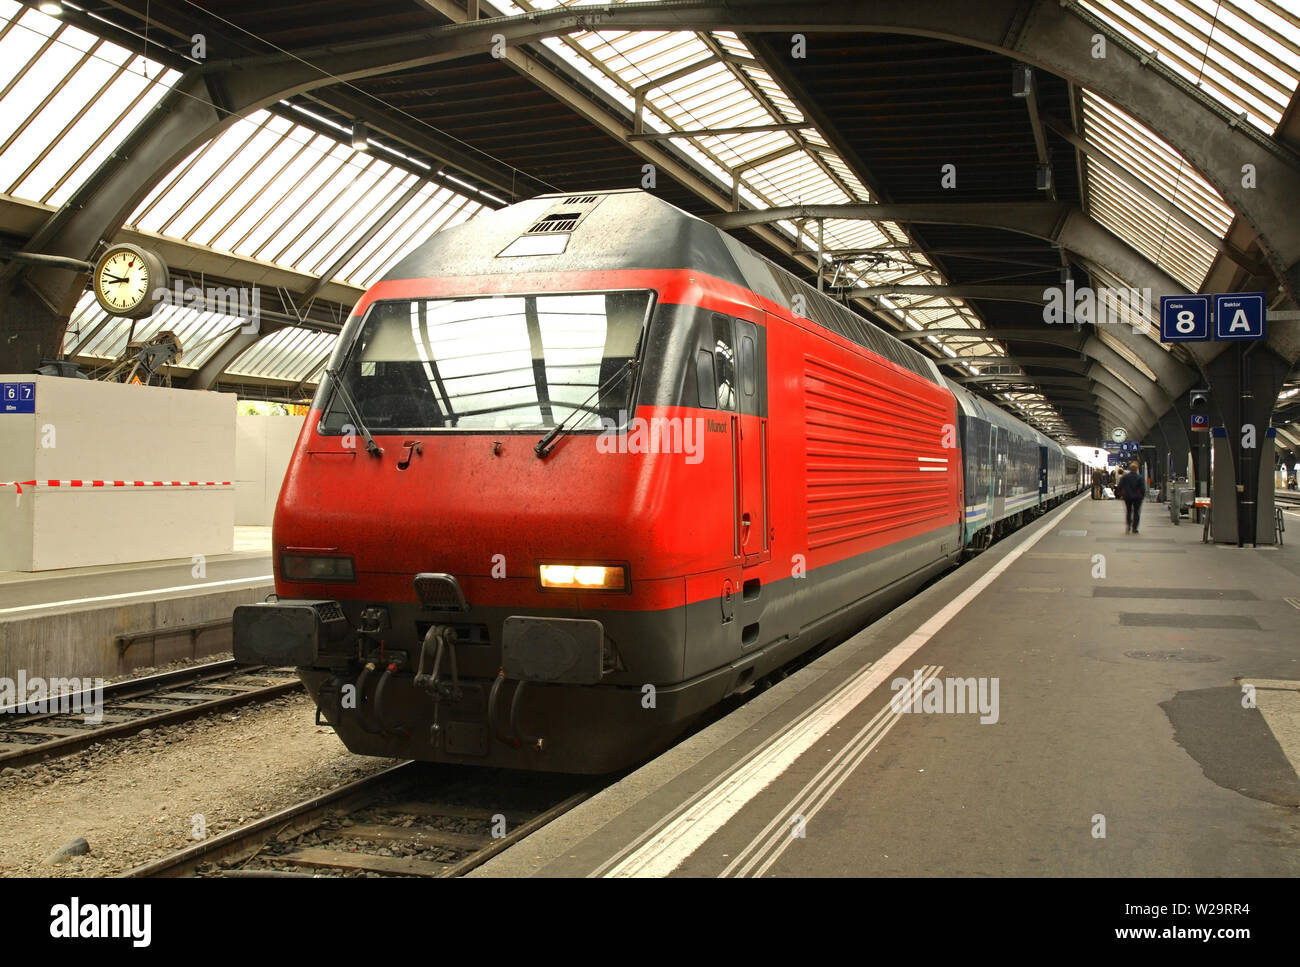 Railway station in Zurich. Switzerland Stock Photo